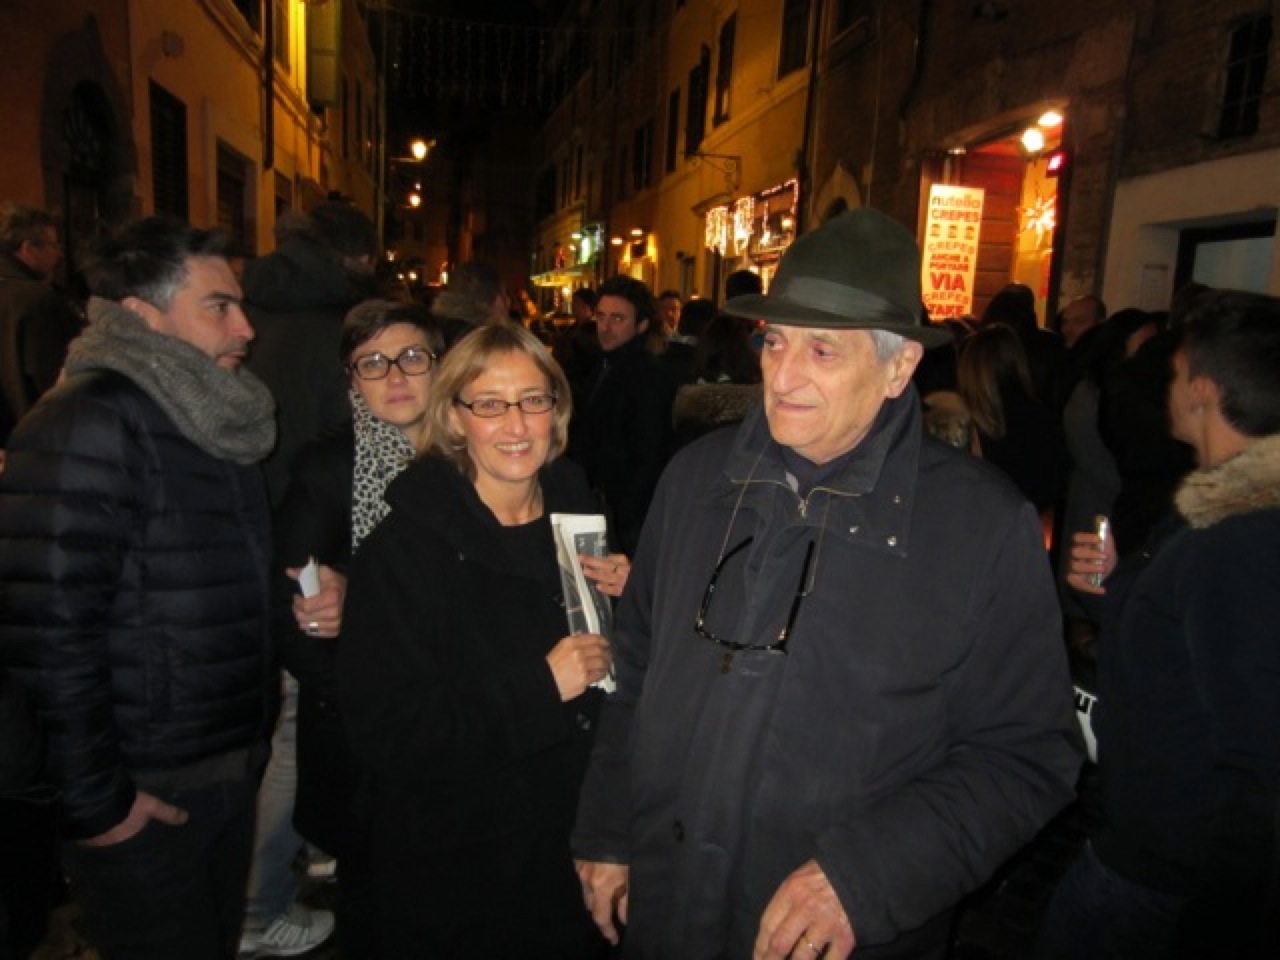  - Opening-Goldiechiari-in-Edicola-Notte-Carla-Subrizi-e-Gianfranco-Baruchello-11-gennaio-2013